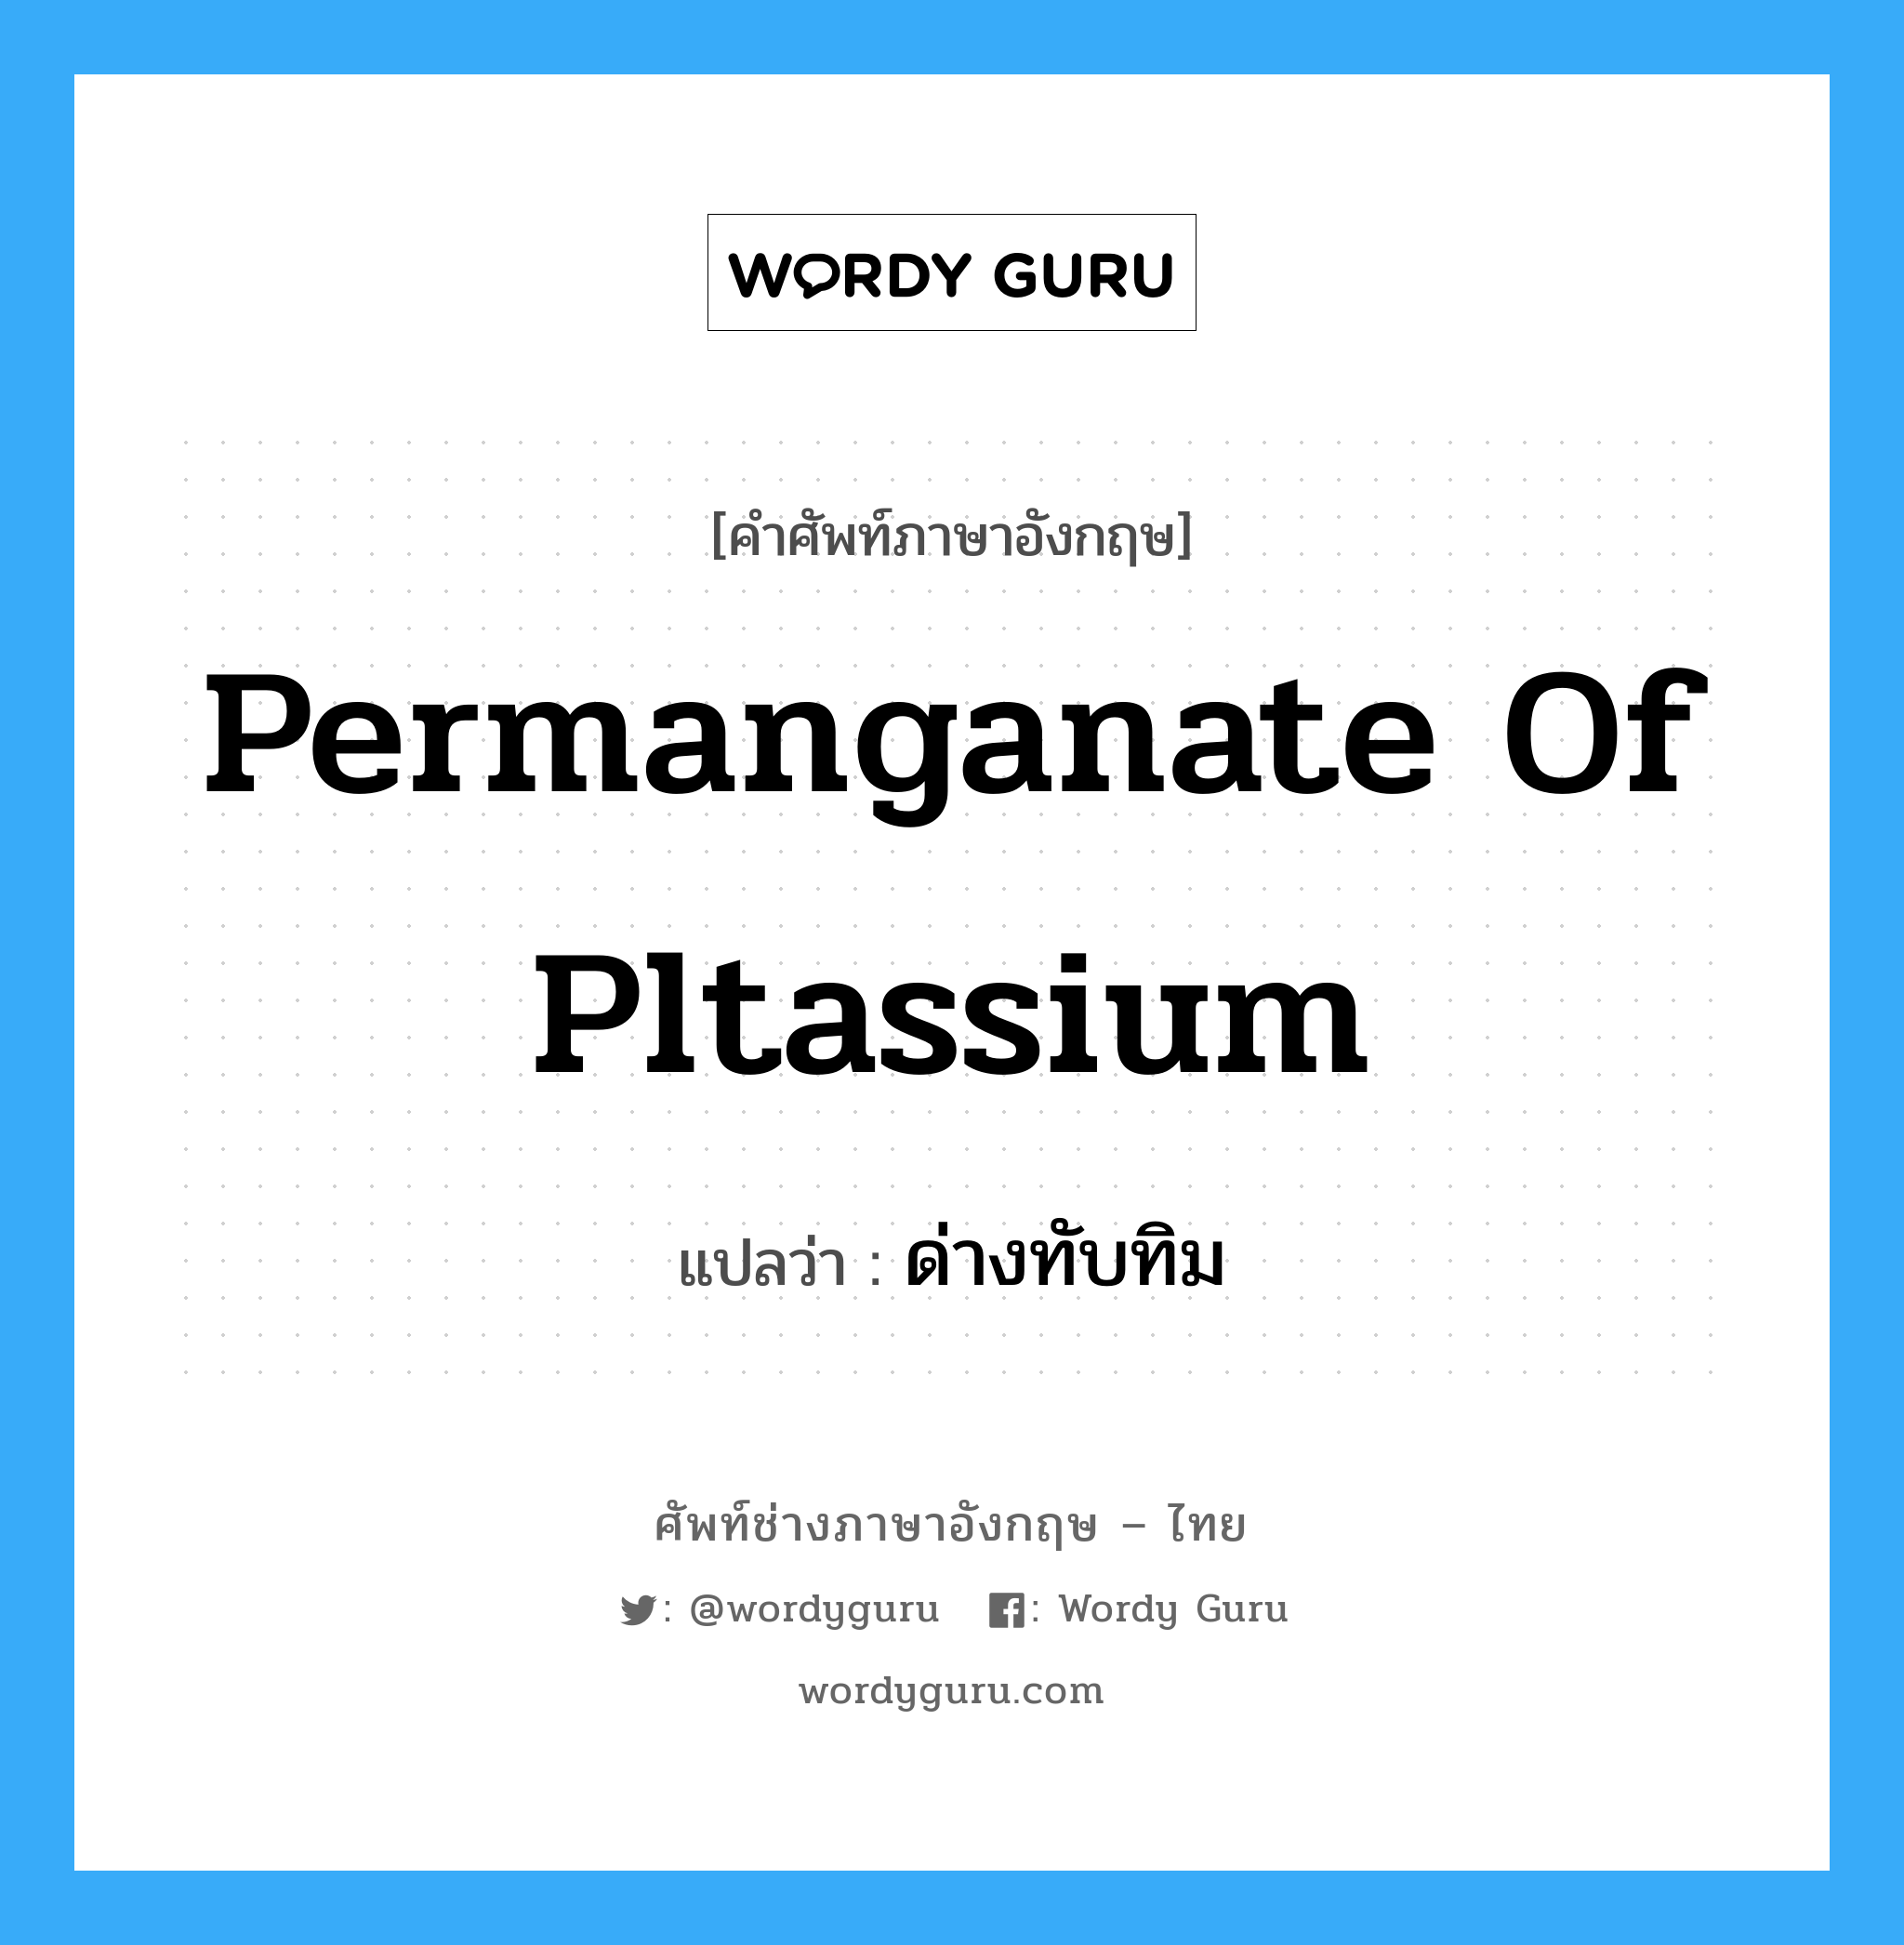 ด่างทับทิม ภาษาอังกฤษ?, คำศัพท์ช่างภาษาอังกฤษ - ไทย ด่างทับทิม คำศัพท์ภาษาอังกฤษ ด่างทับทิม แปลว่า permanganate of pltassium